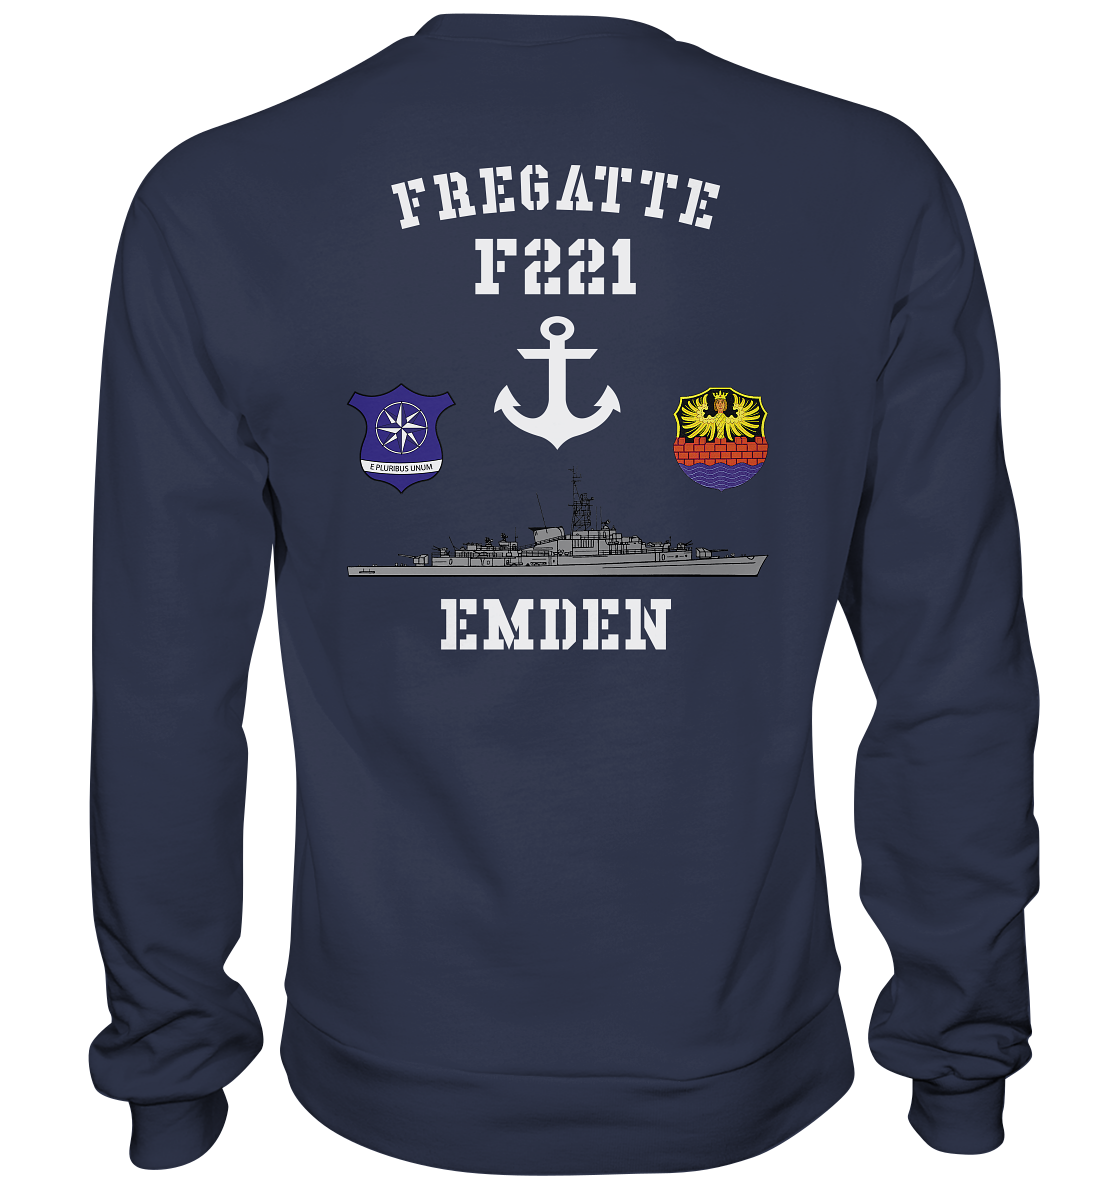 Fregatte F221 EMDEN - Deutsche Marinekameraden - Premium Sweatshirt